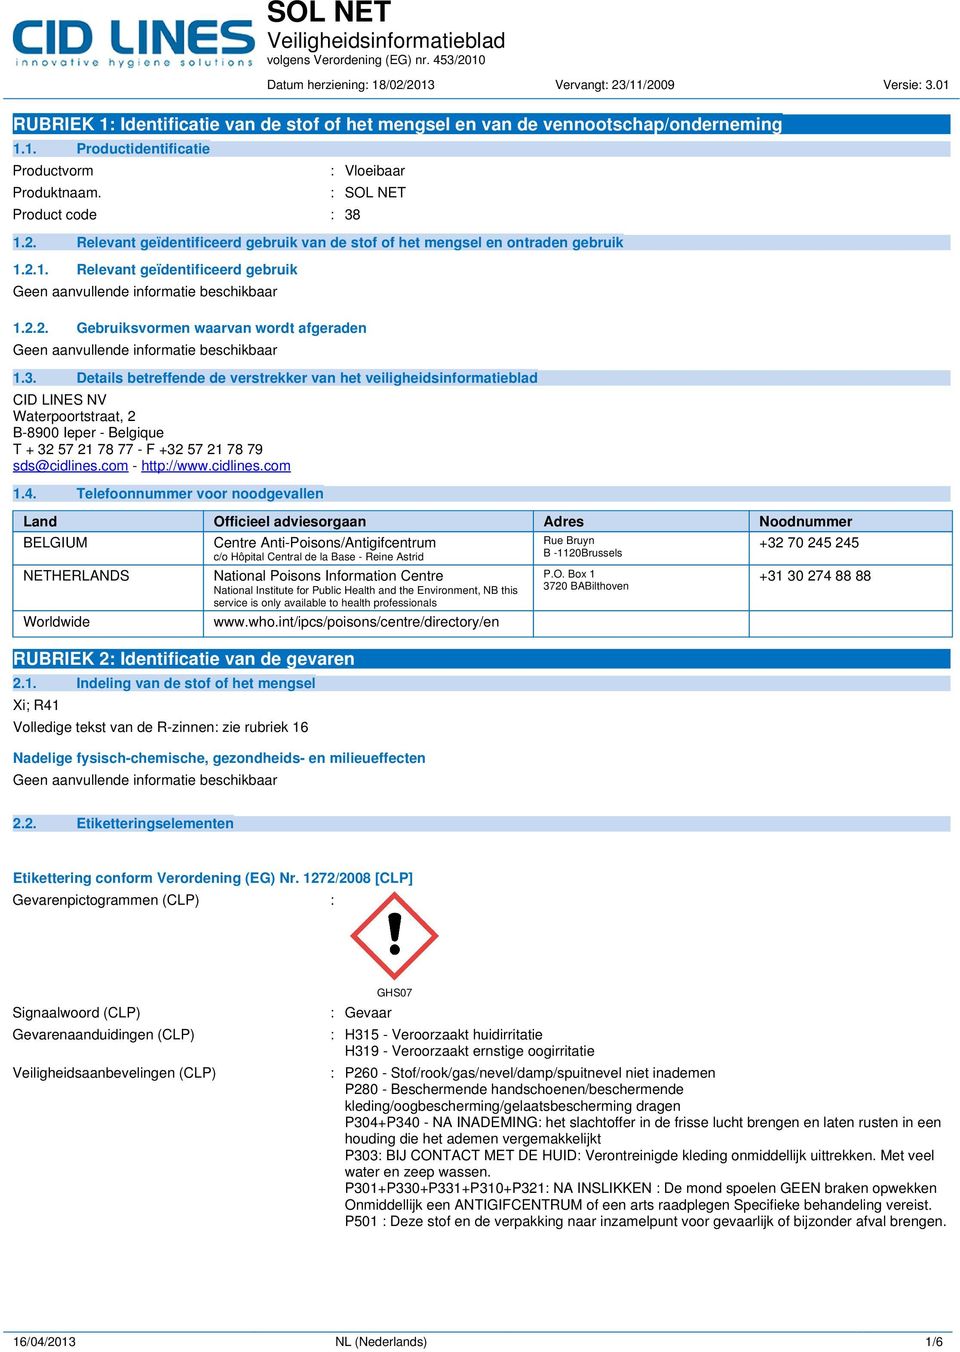 3. Details betreffende de verstrekker van het veiligheidsinformatieblad CID LINES NV Waterpoortstraat, 2 B-8900 Ieper - Belgique T + 32 57 21 78 77 - F +32 57 21 78 79 sds@cidlines.com - http://www.